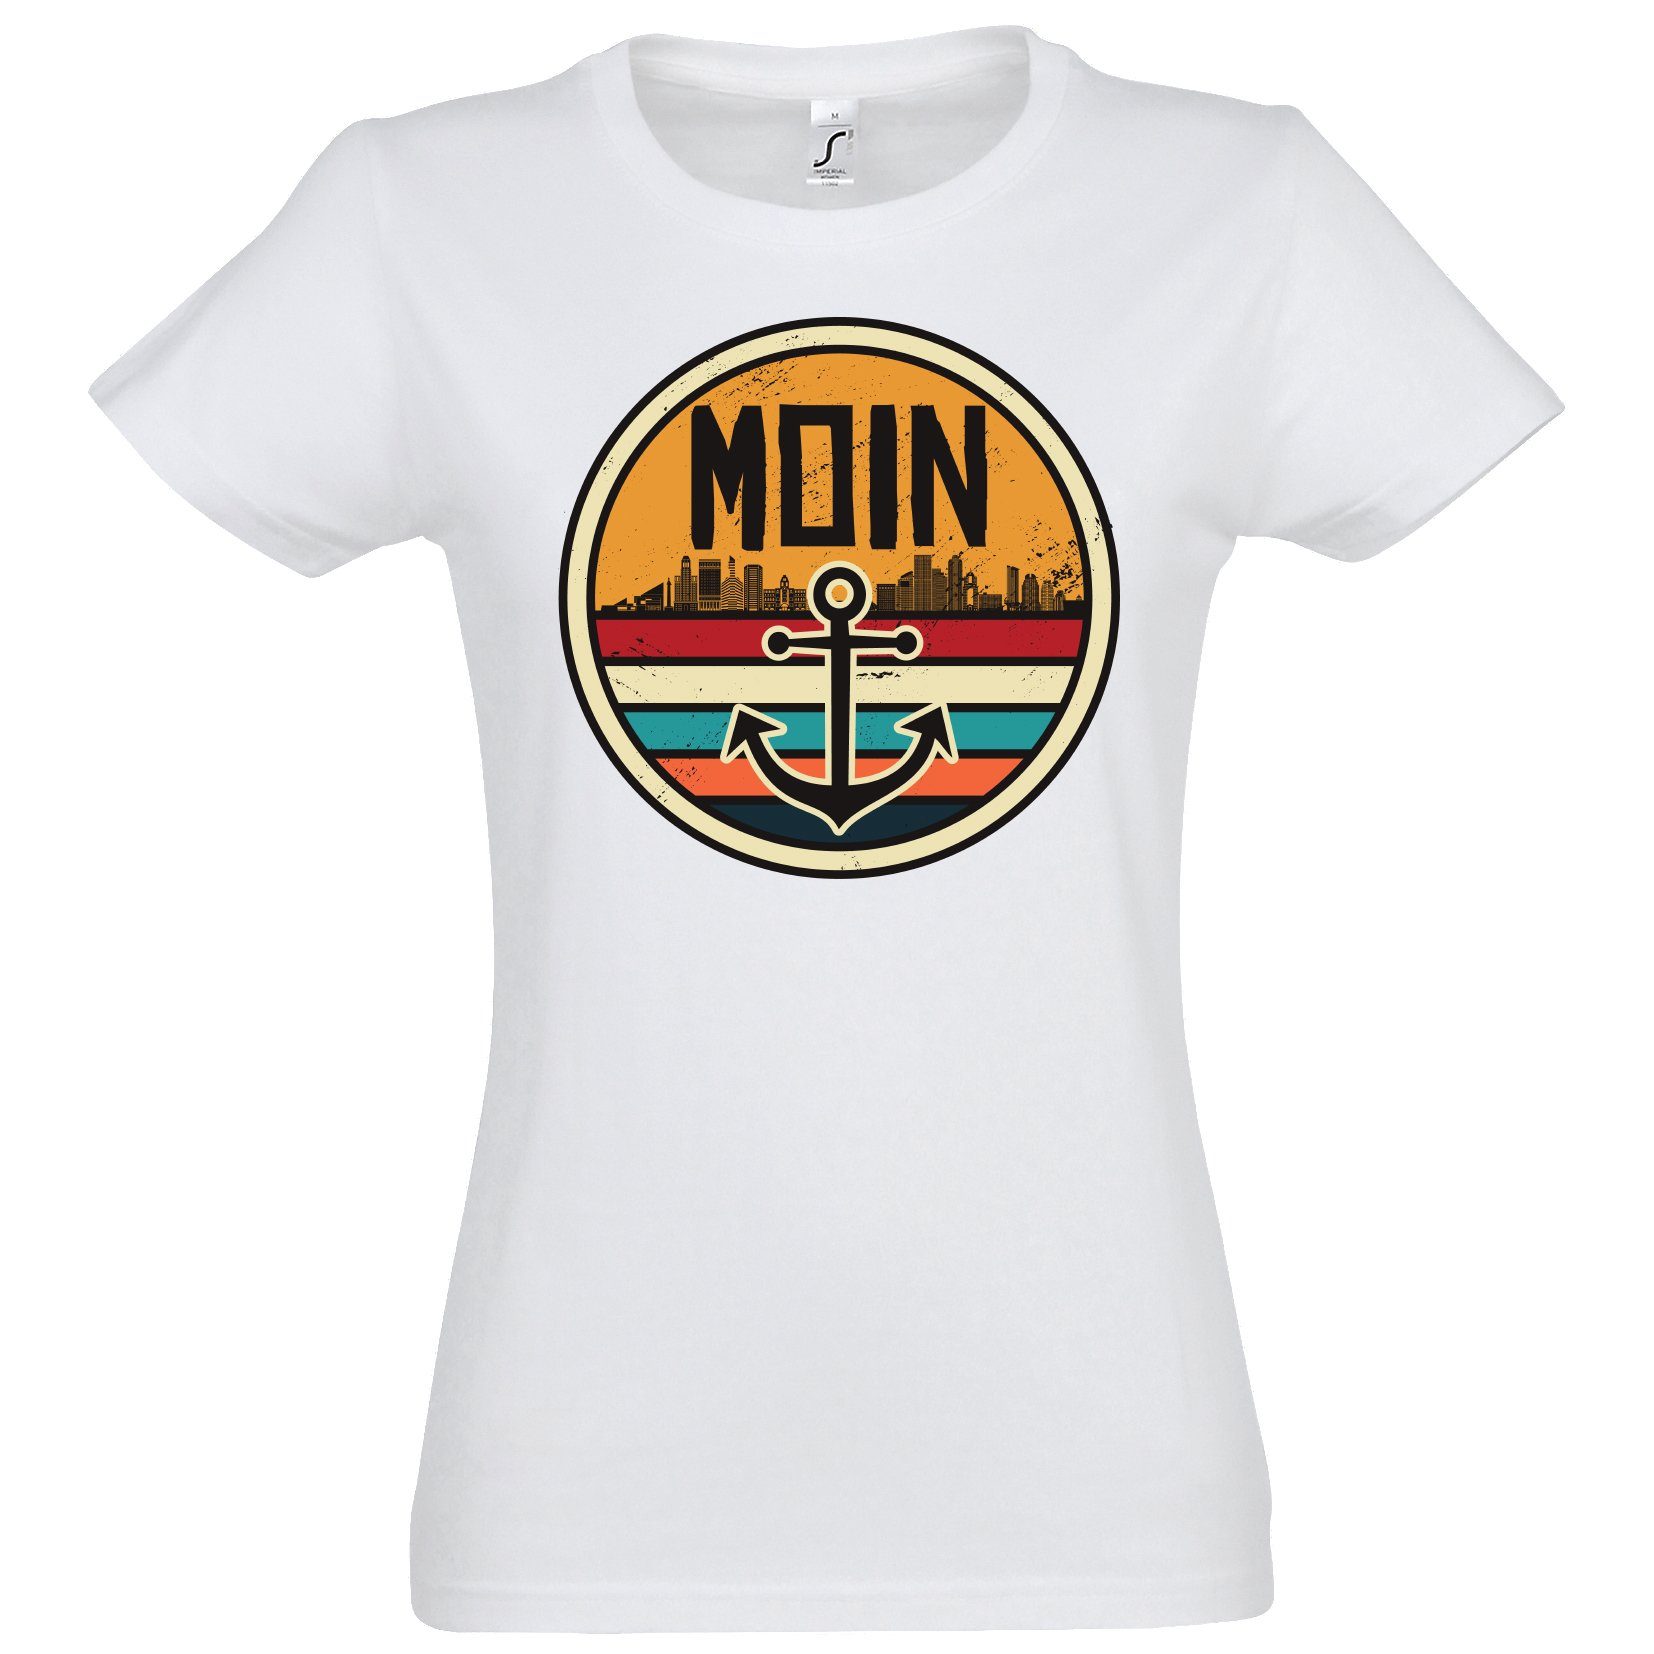 Damen Spruch Anker Moin und Print-Shirt mit Designz Print T-Shirt Spruch Logo Weiß Youth